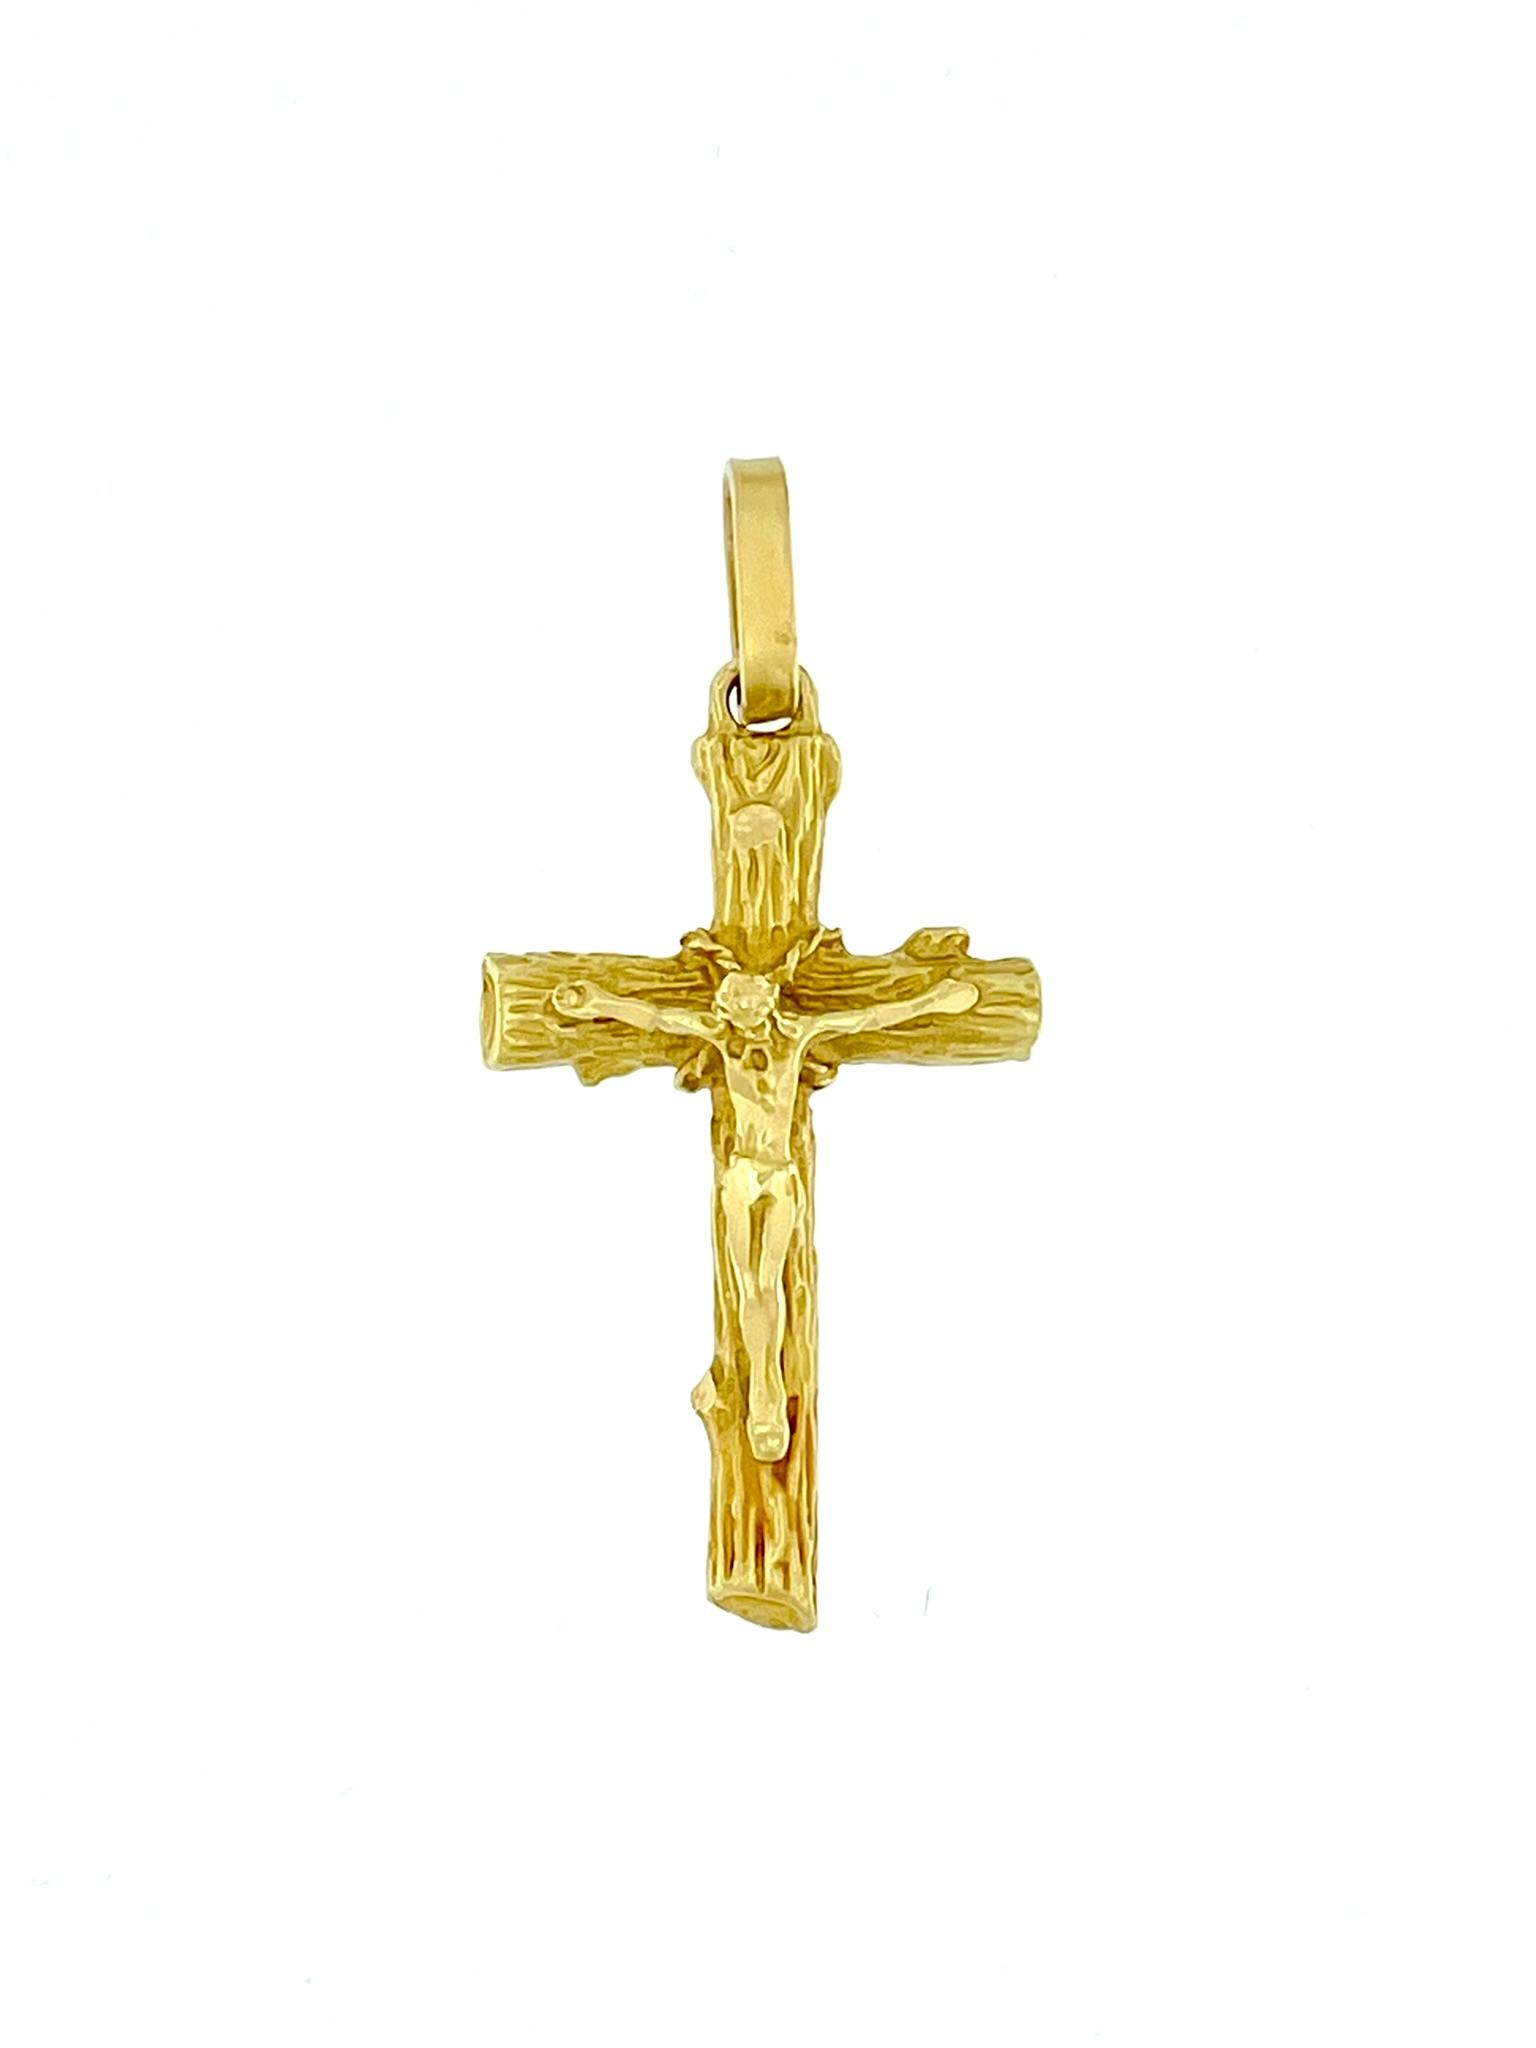 Dieses italienische Vintage-Kruzifix ist ein fesselndes religiöses Schmuckstück, das aus glänzendem 18-karätigem Gelbgold gefertigt ist. Das Kruzifix zeichnet sich durch sein einzigartiges und kompliziertes Relief aus, das der Textur eines